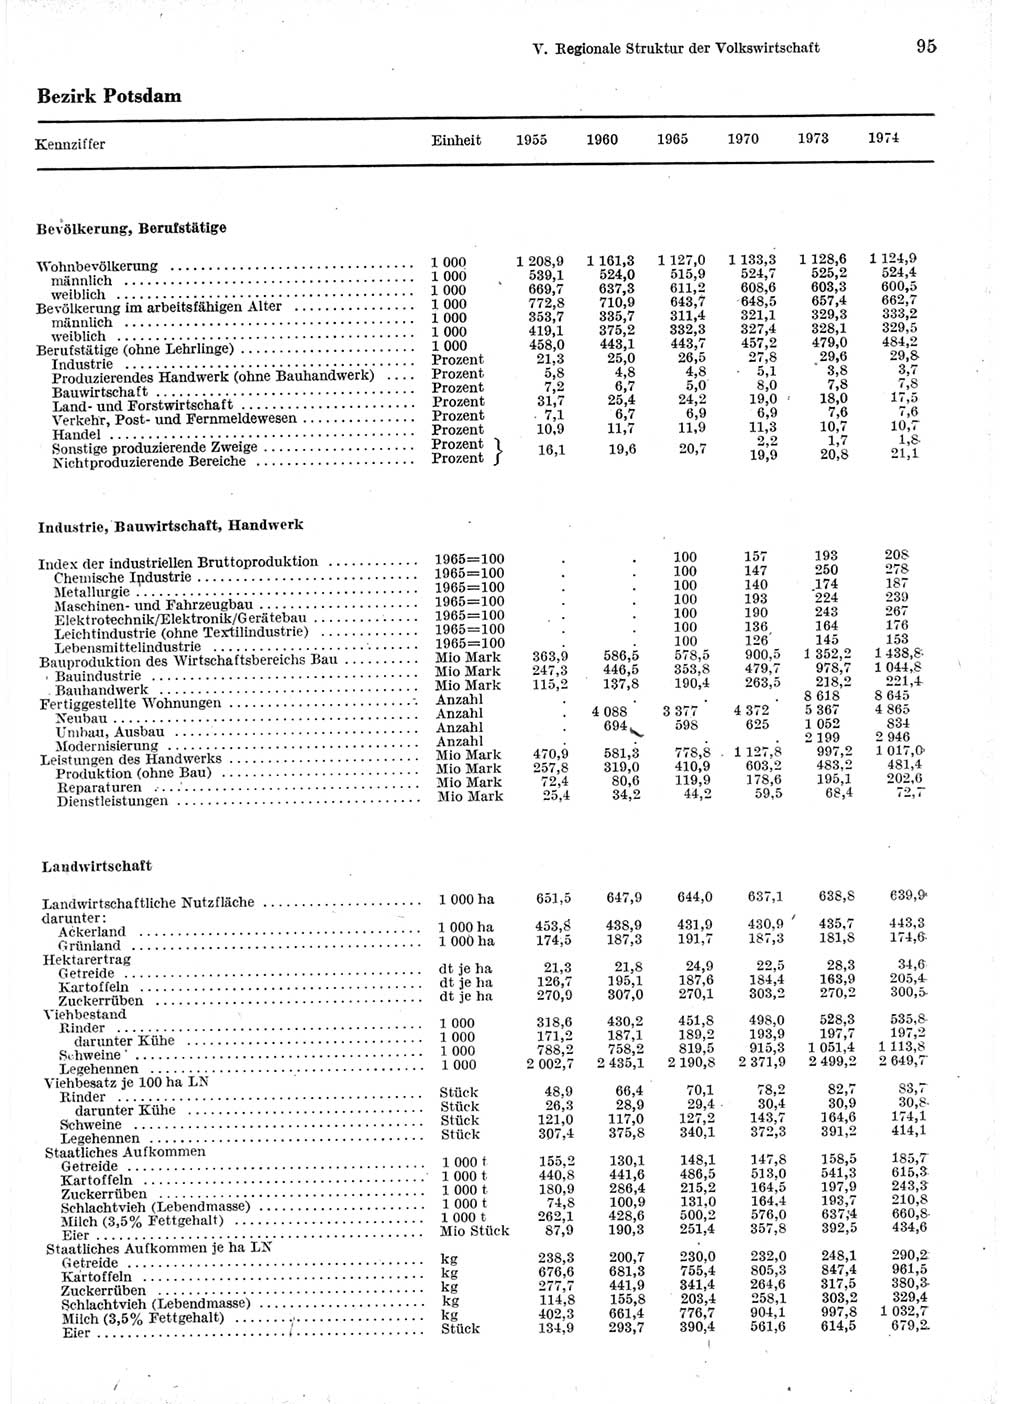 Statistisches Jahrbuch der Deutschen Demokratischen Republik (DDR) 1975, Seite 95 (Stat. Jb. DDR 1975, S. 95)